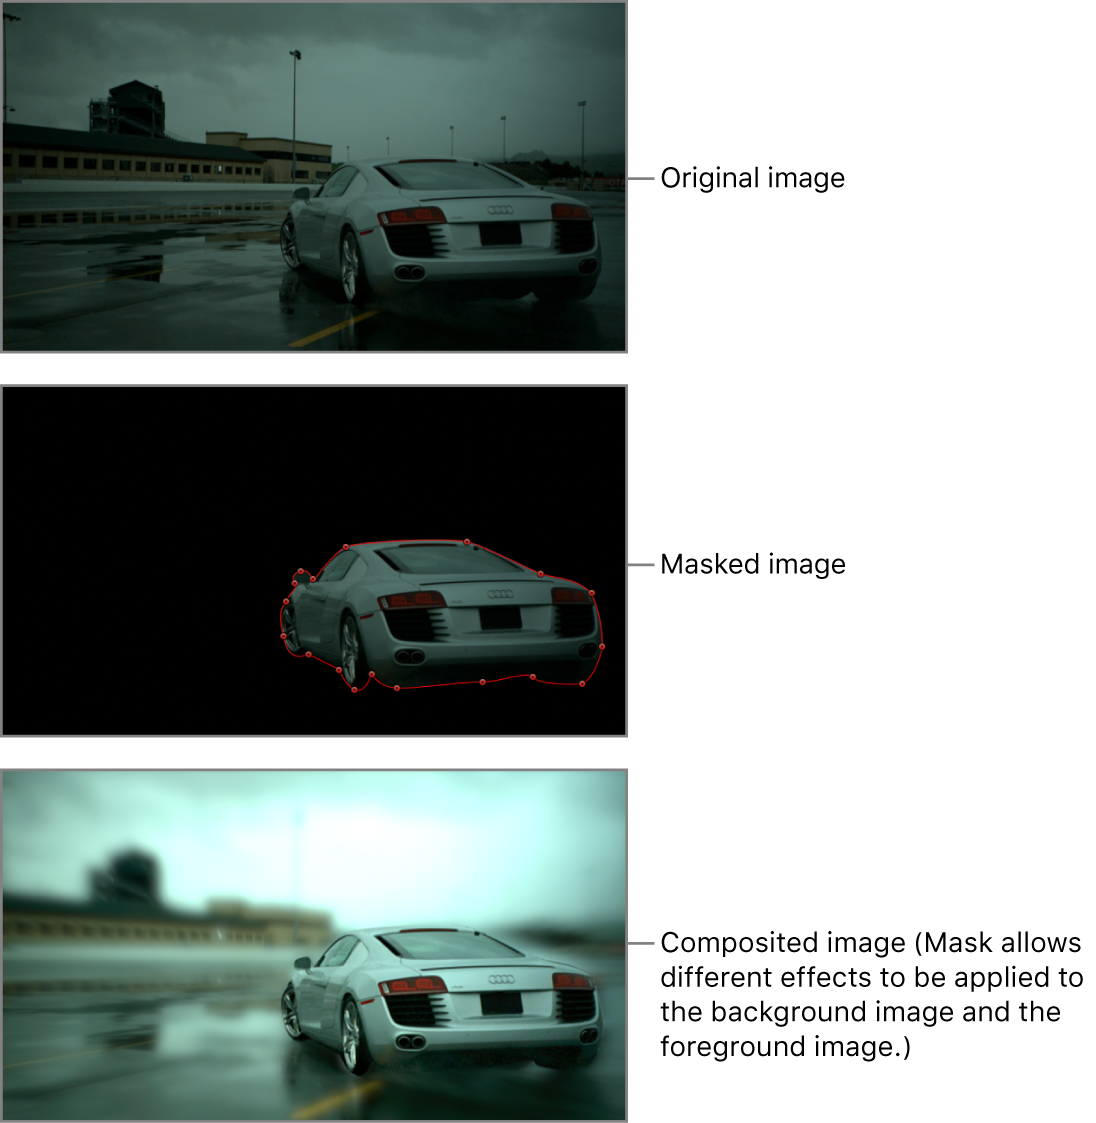 显示蒙版前的汽车图像、沿汽车周围绘制的蒙版以及最终的转描效果的画布（模糊滤镜影响背景但不影响汽车）